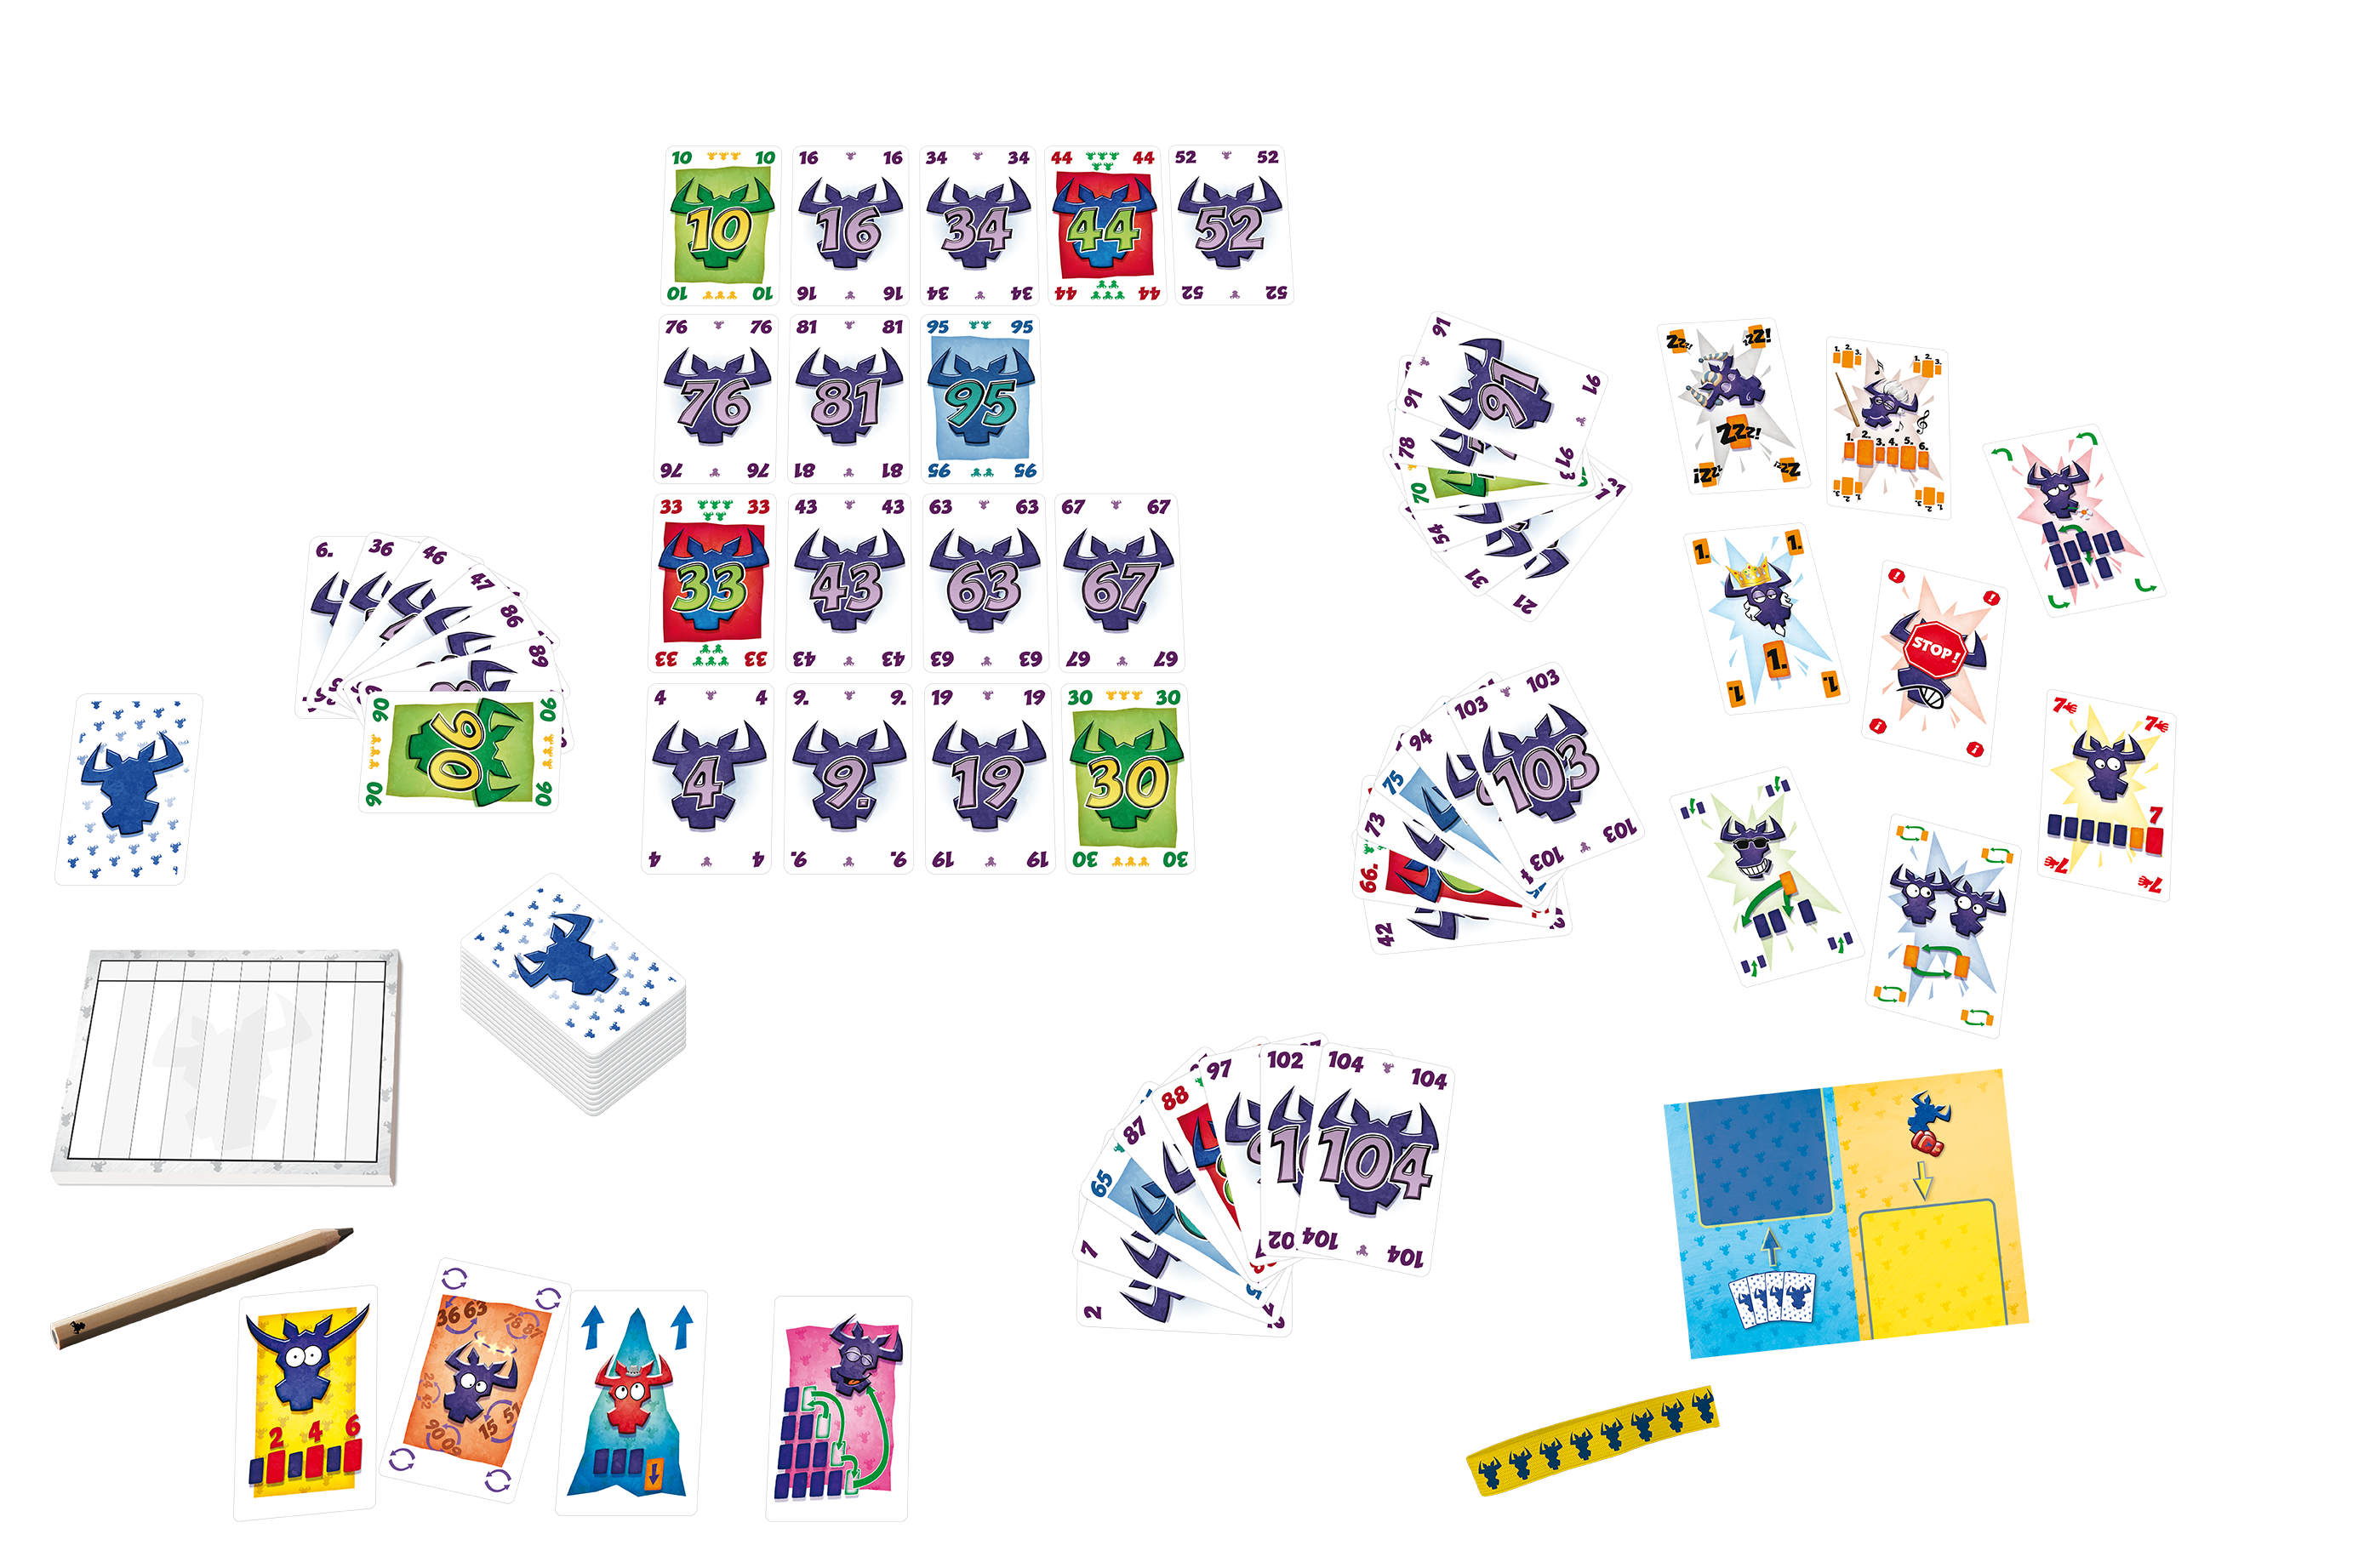 Das AMIGO Kartenspiel 6 nimmt! – 30 Jahre-Edition